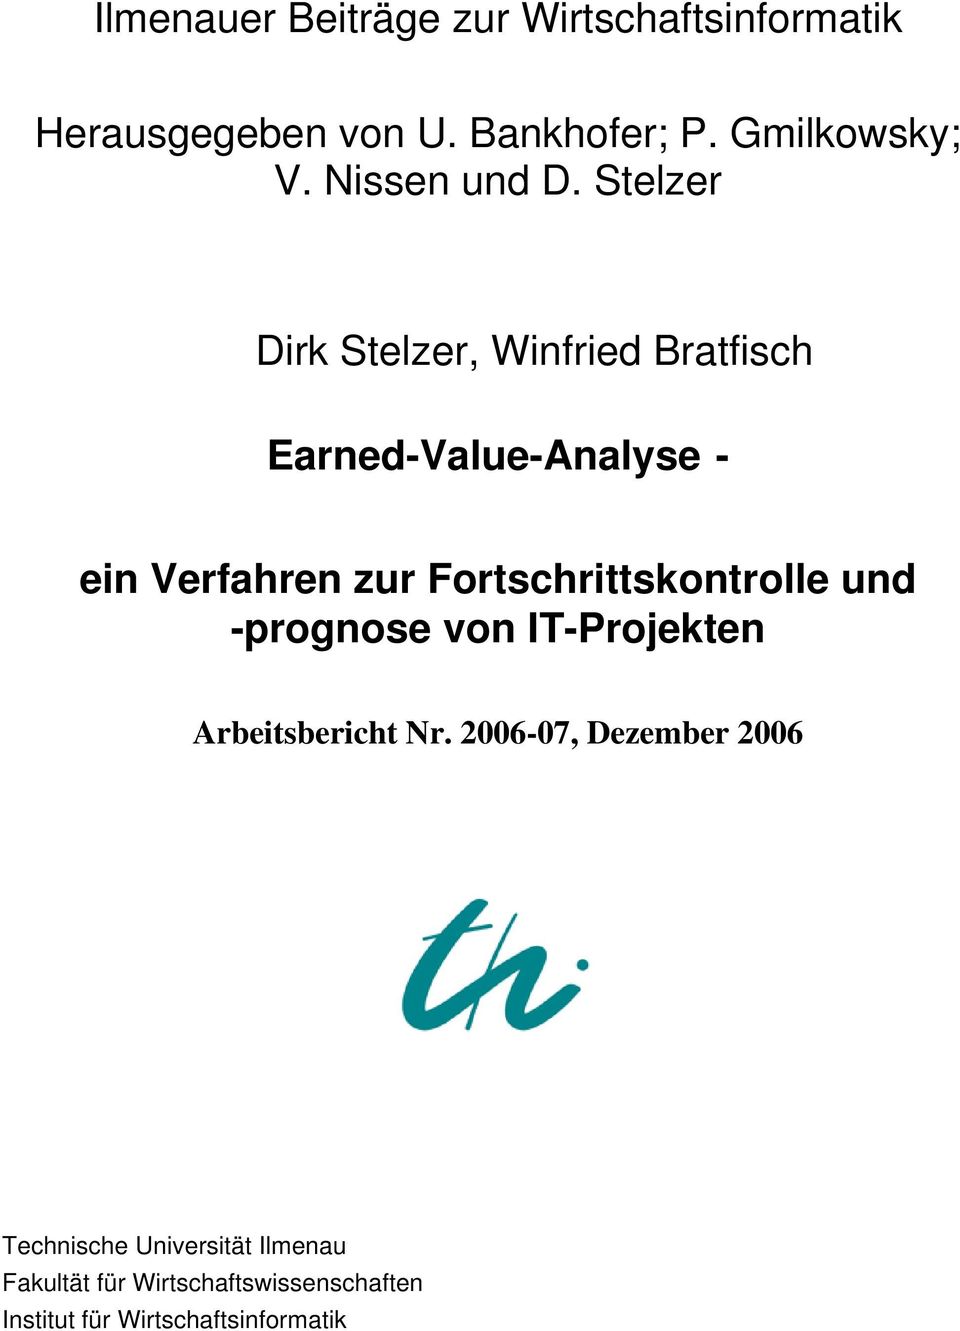 Stelzer Dirk Stelzer, Winfried Bratfisch Earned-Value-Analyse - ein Verfahren zur